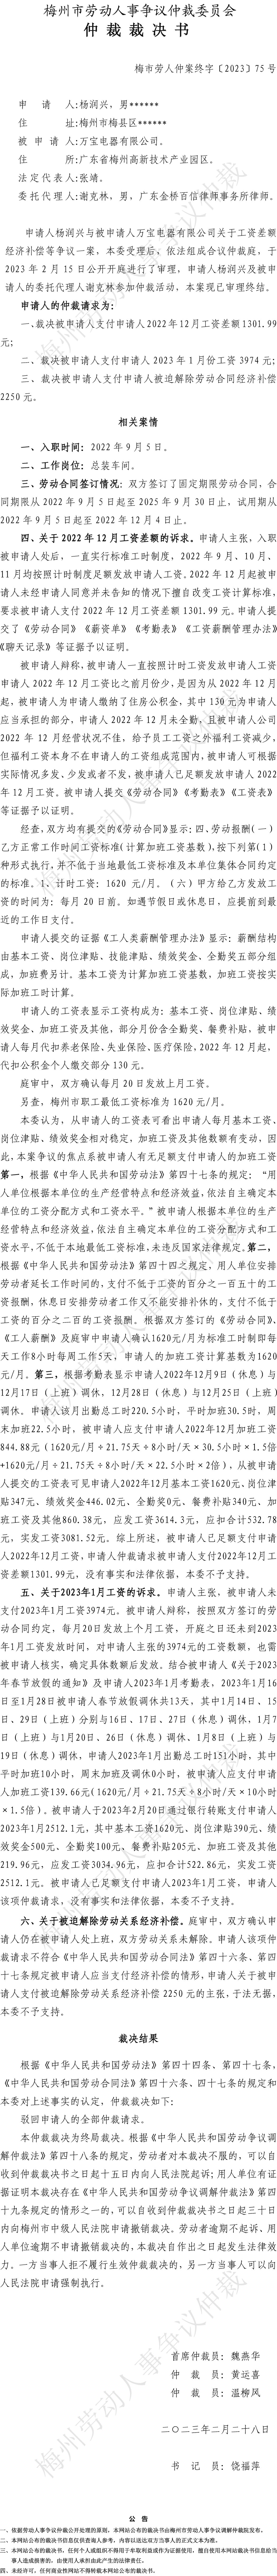 梅市劳人仲案终字〔2023〕75号 杨润兴诉万宝电器有限公司 仲裁裁决书.JPG